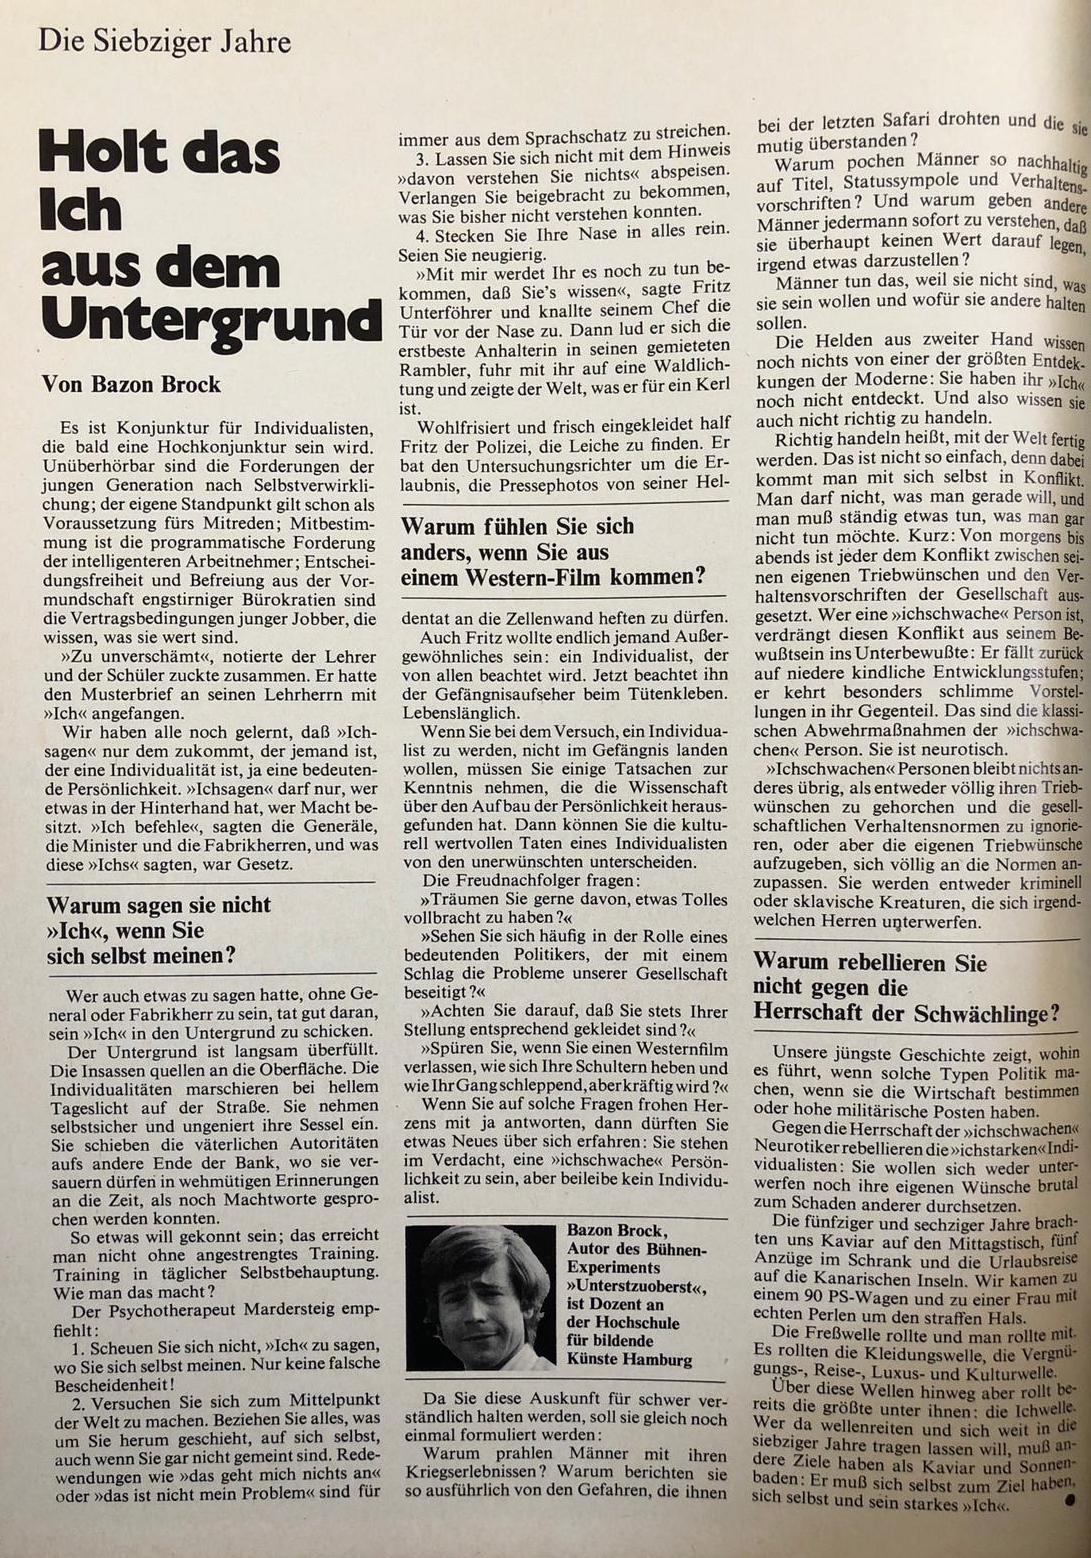 Holt das Ich aus dem Untergrund, Bild: M – Die Zeitschrift für den Mann. September 1969, S. 26.